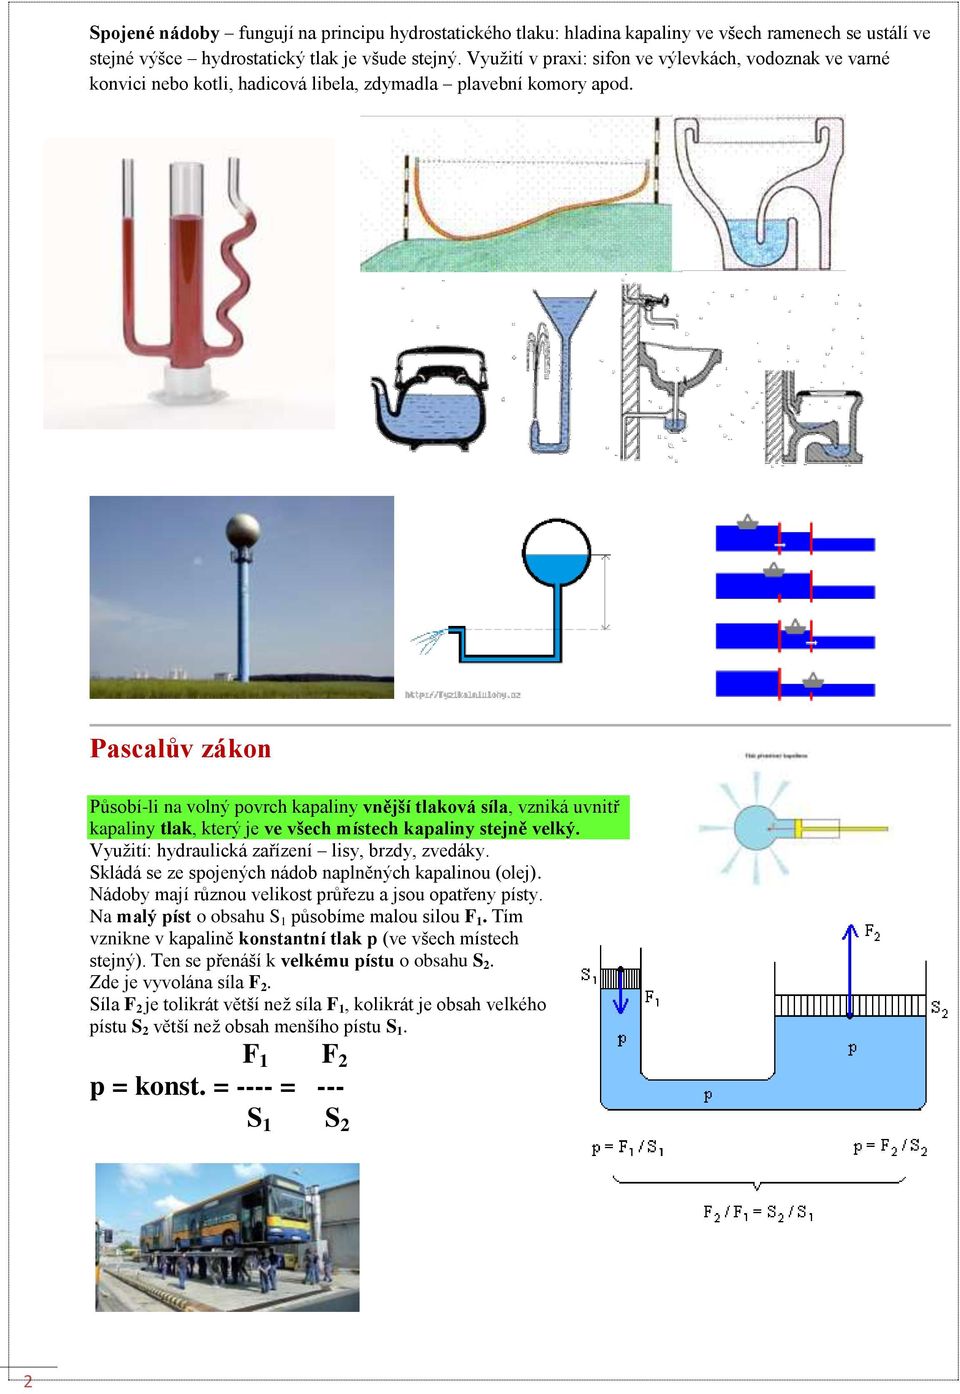 Pascalův zákon Působí-li na volný povrch kapaliny vnější tlaková síla, vzniká uvnitř kapaliny tlak, který je ve všech místech kapaliny stejně velký. Využití: hydraulická zařízení lisy, brzdy, zvedáky.